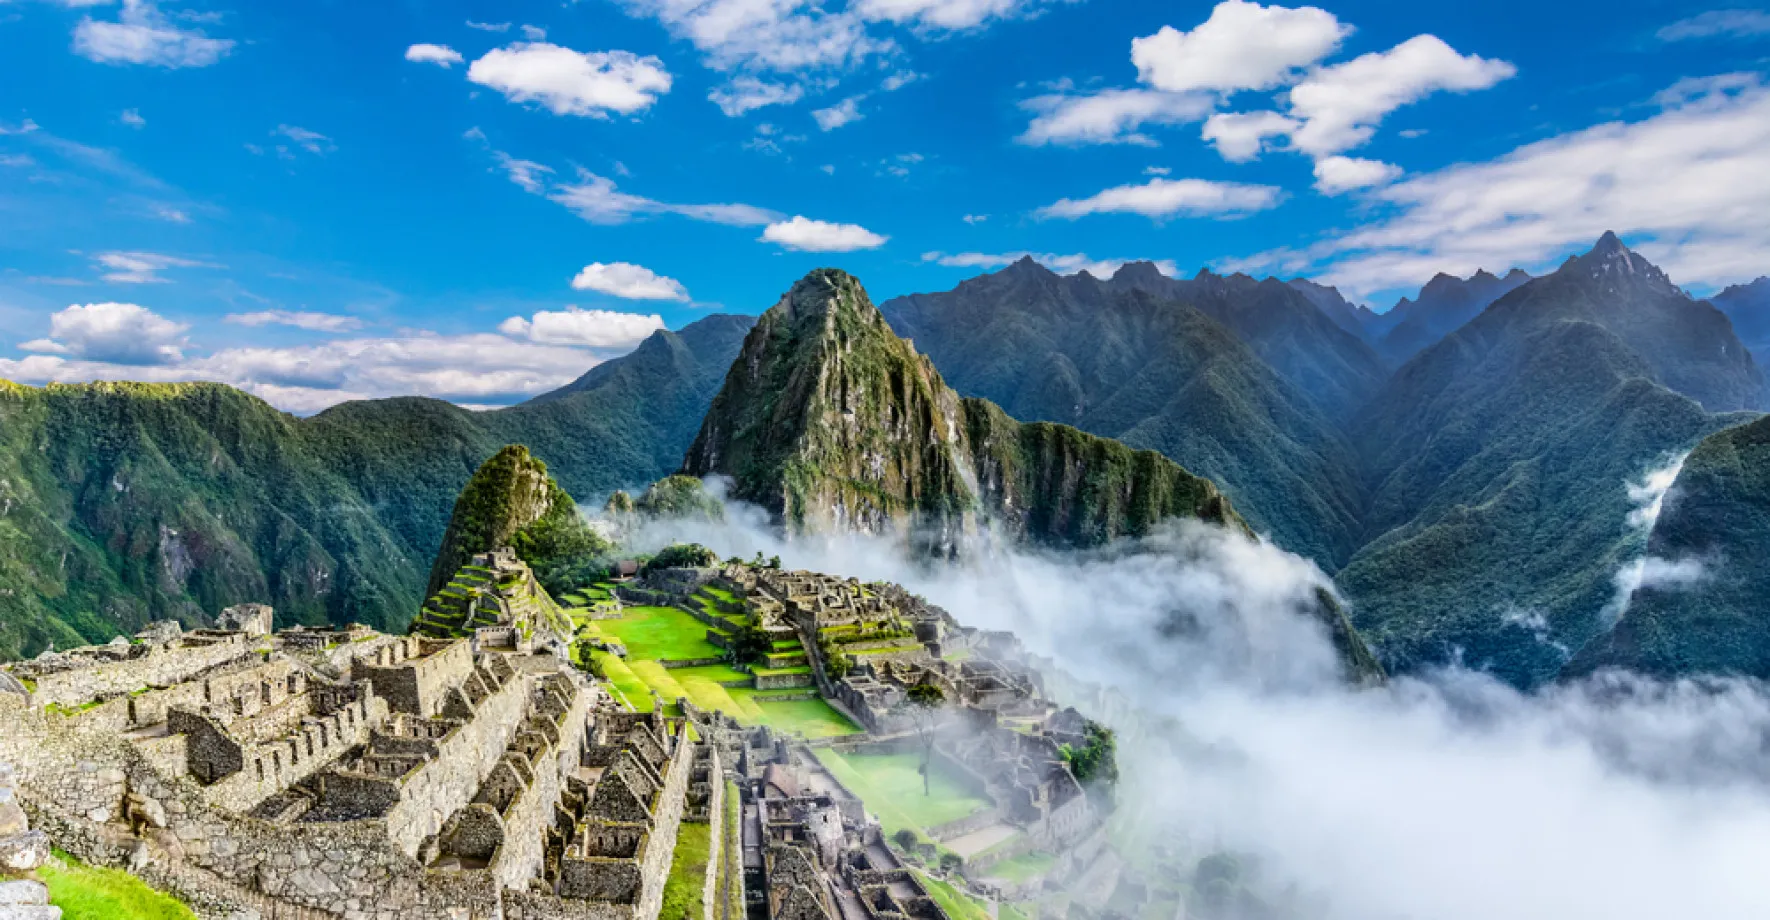 Turistů už je tu příliš a památce škodí. Peru omezí vstup do Machu Picchu